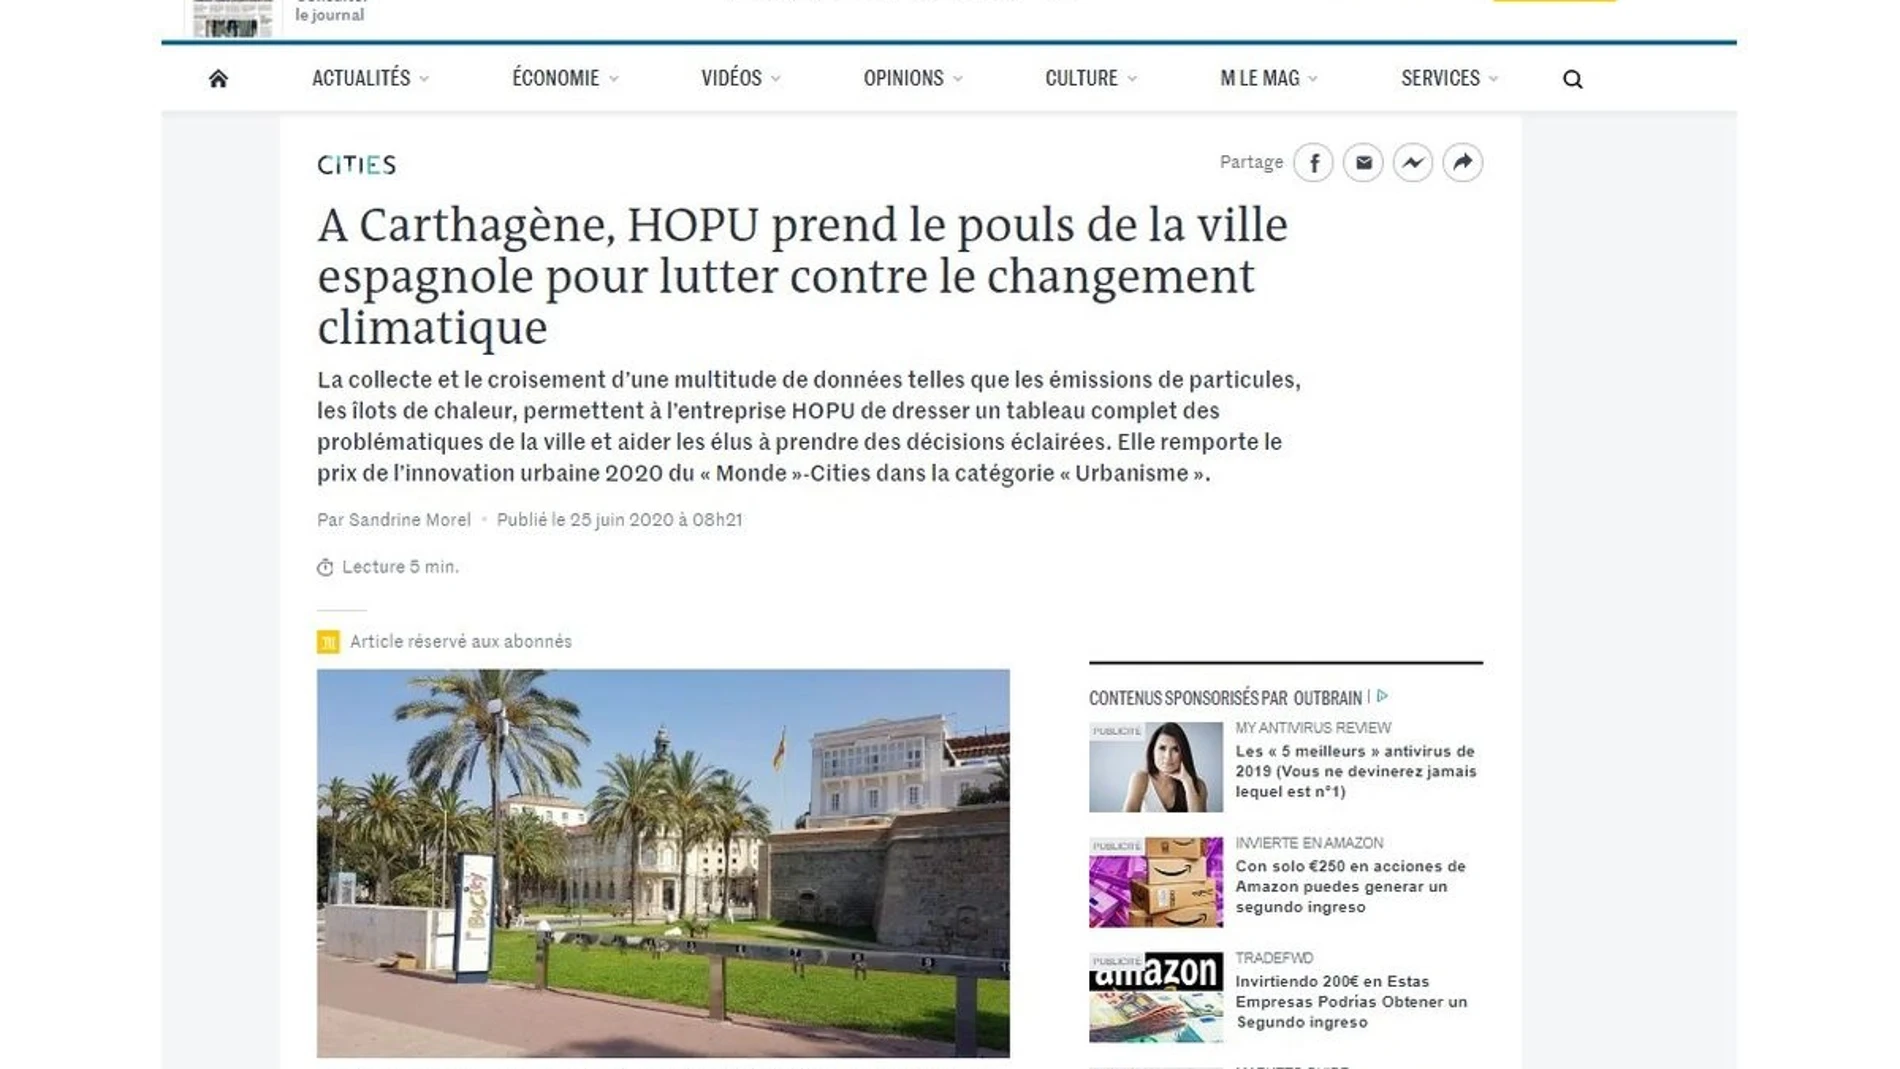 El periodico francés Le Monde distingue a Cartagena con el premio de Innovación Urbana 2020